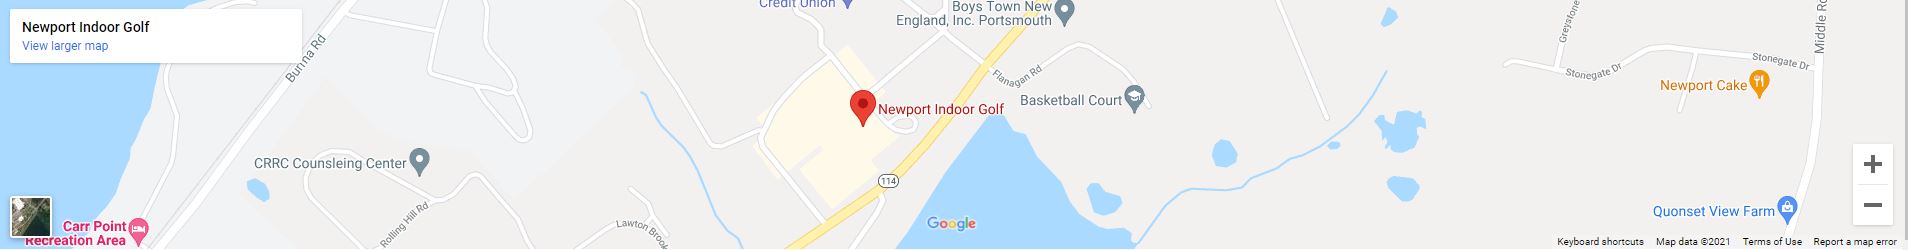 Newport Indoor Golf map